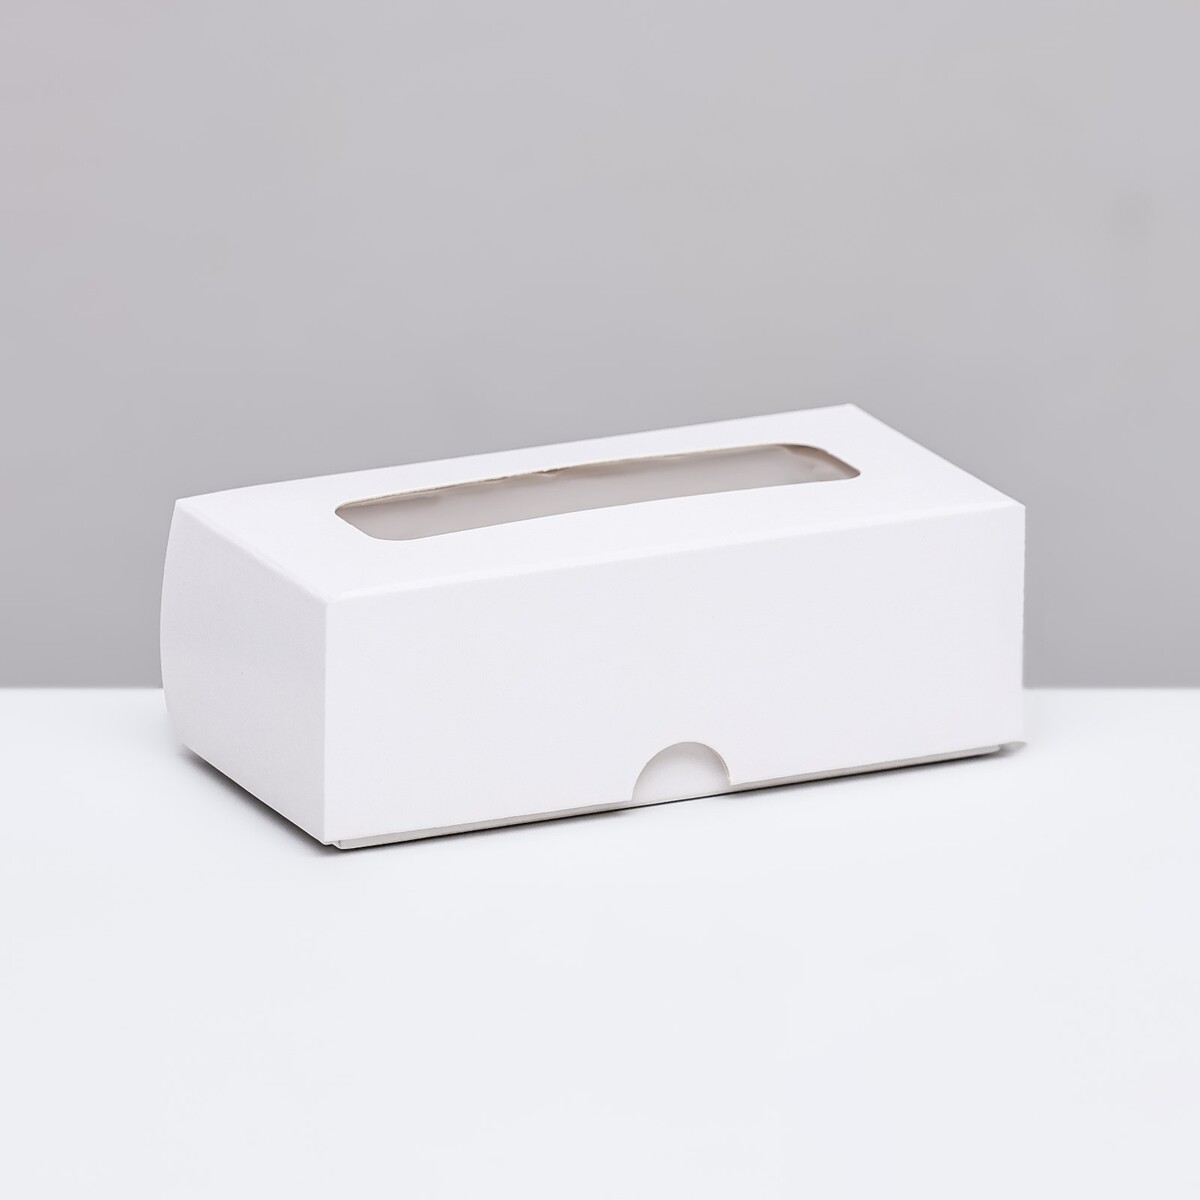 Коробка складная под 2 конфеты, белая, 5 х 10,5 х 3,5 см коробка под 4 конфеты